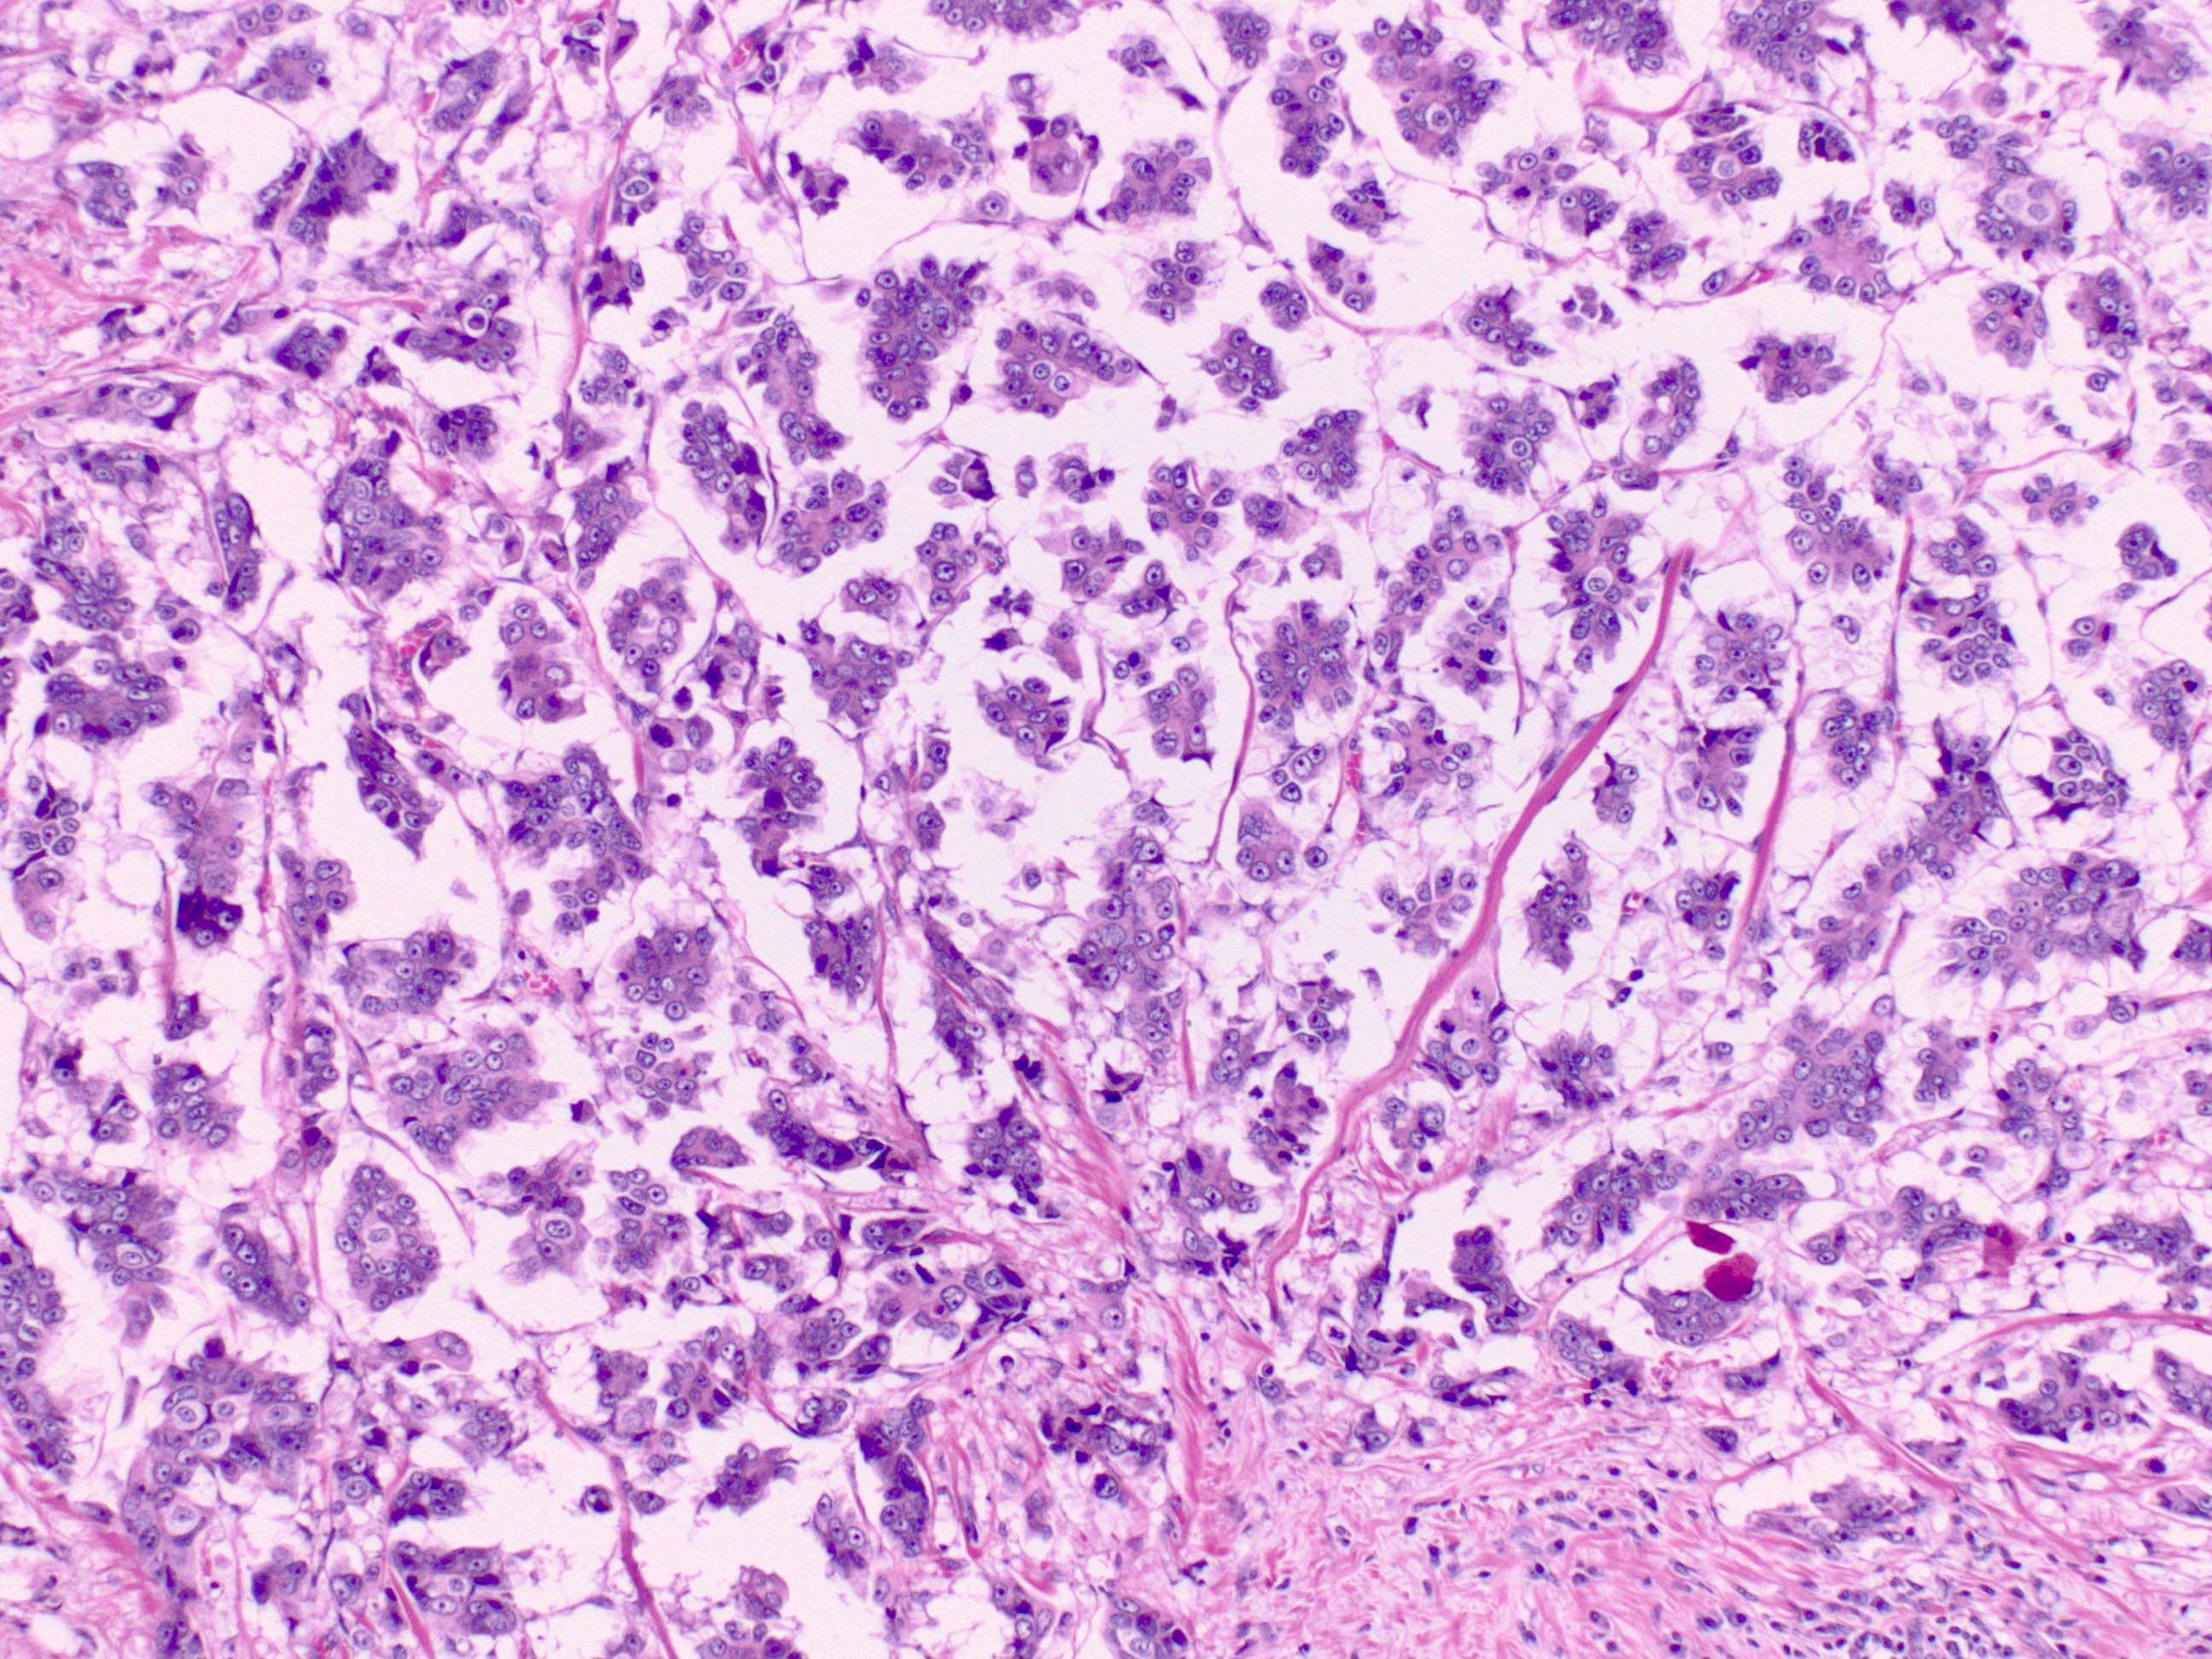 Micropapillary carcinoma